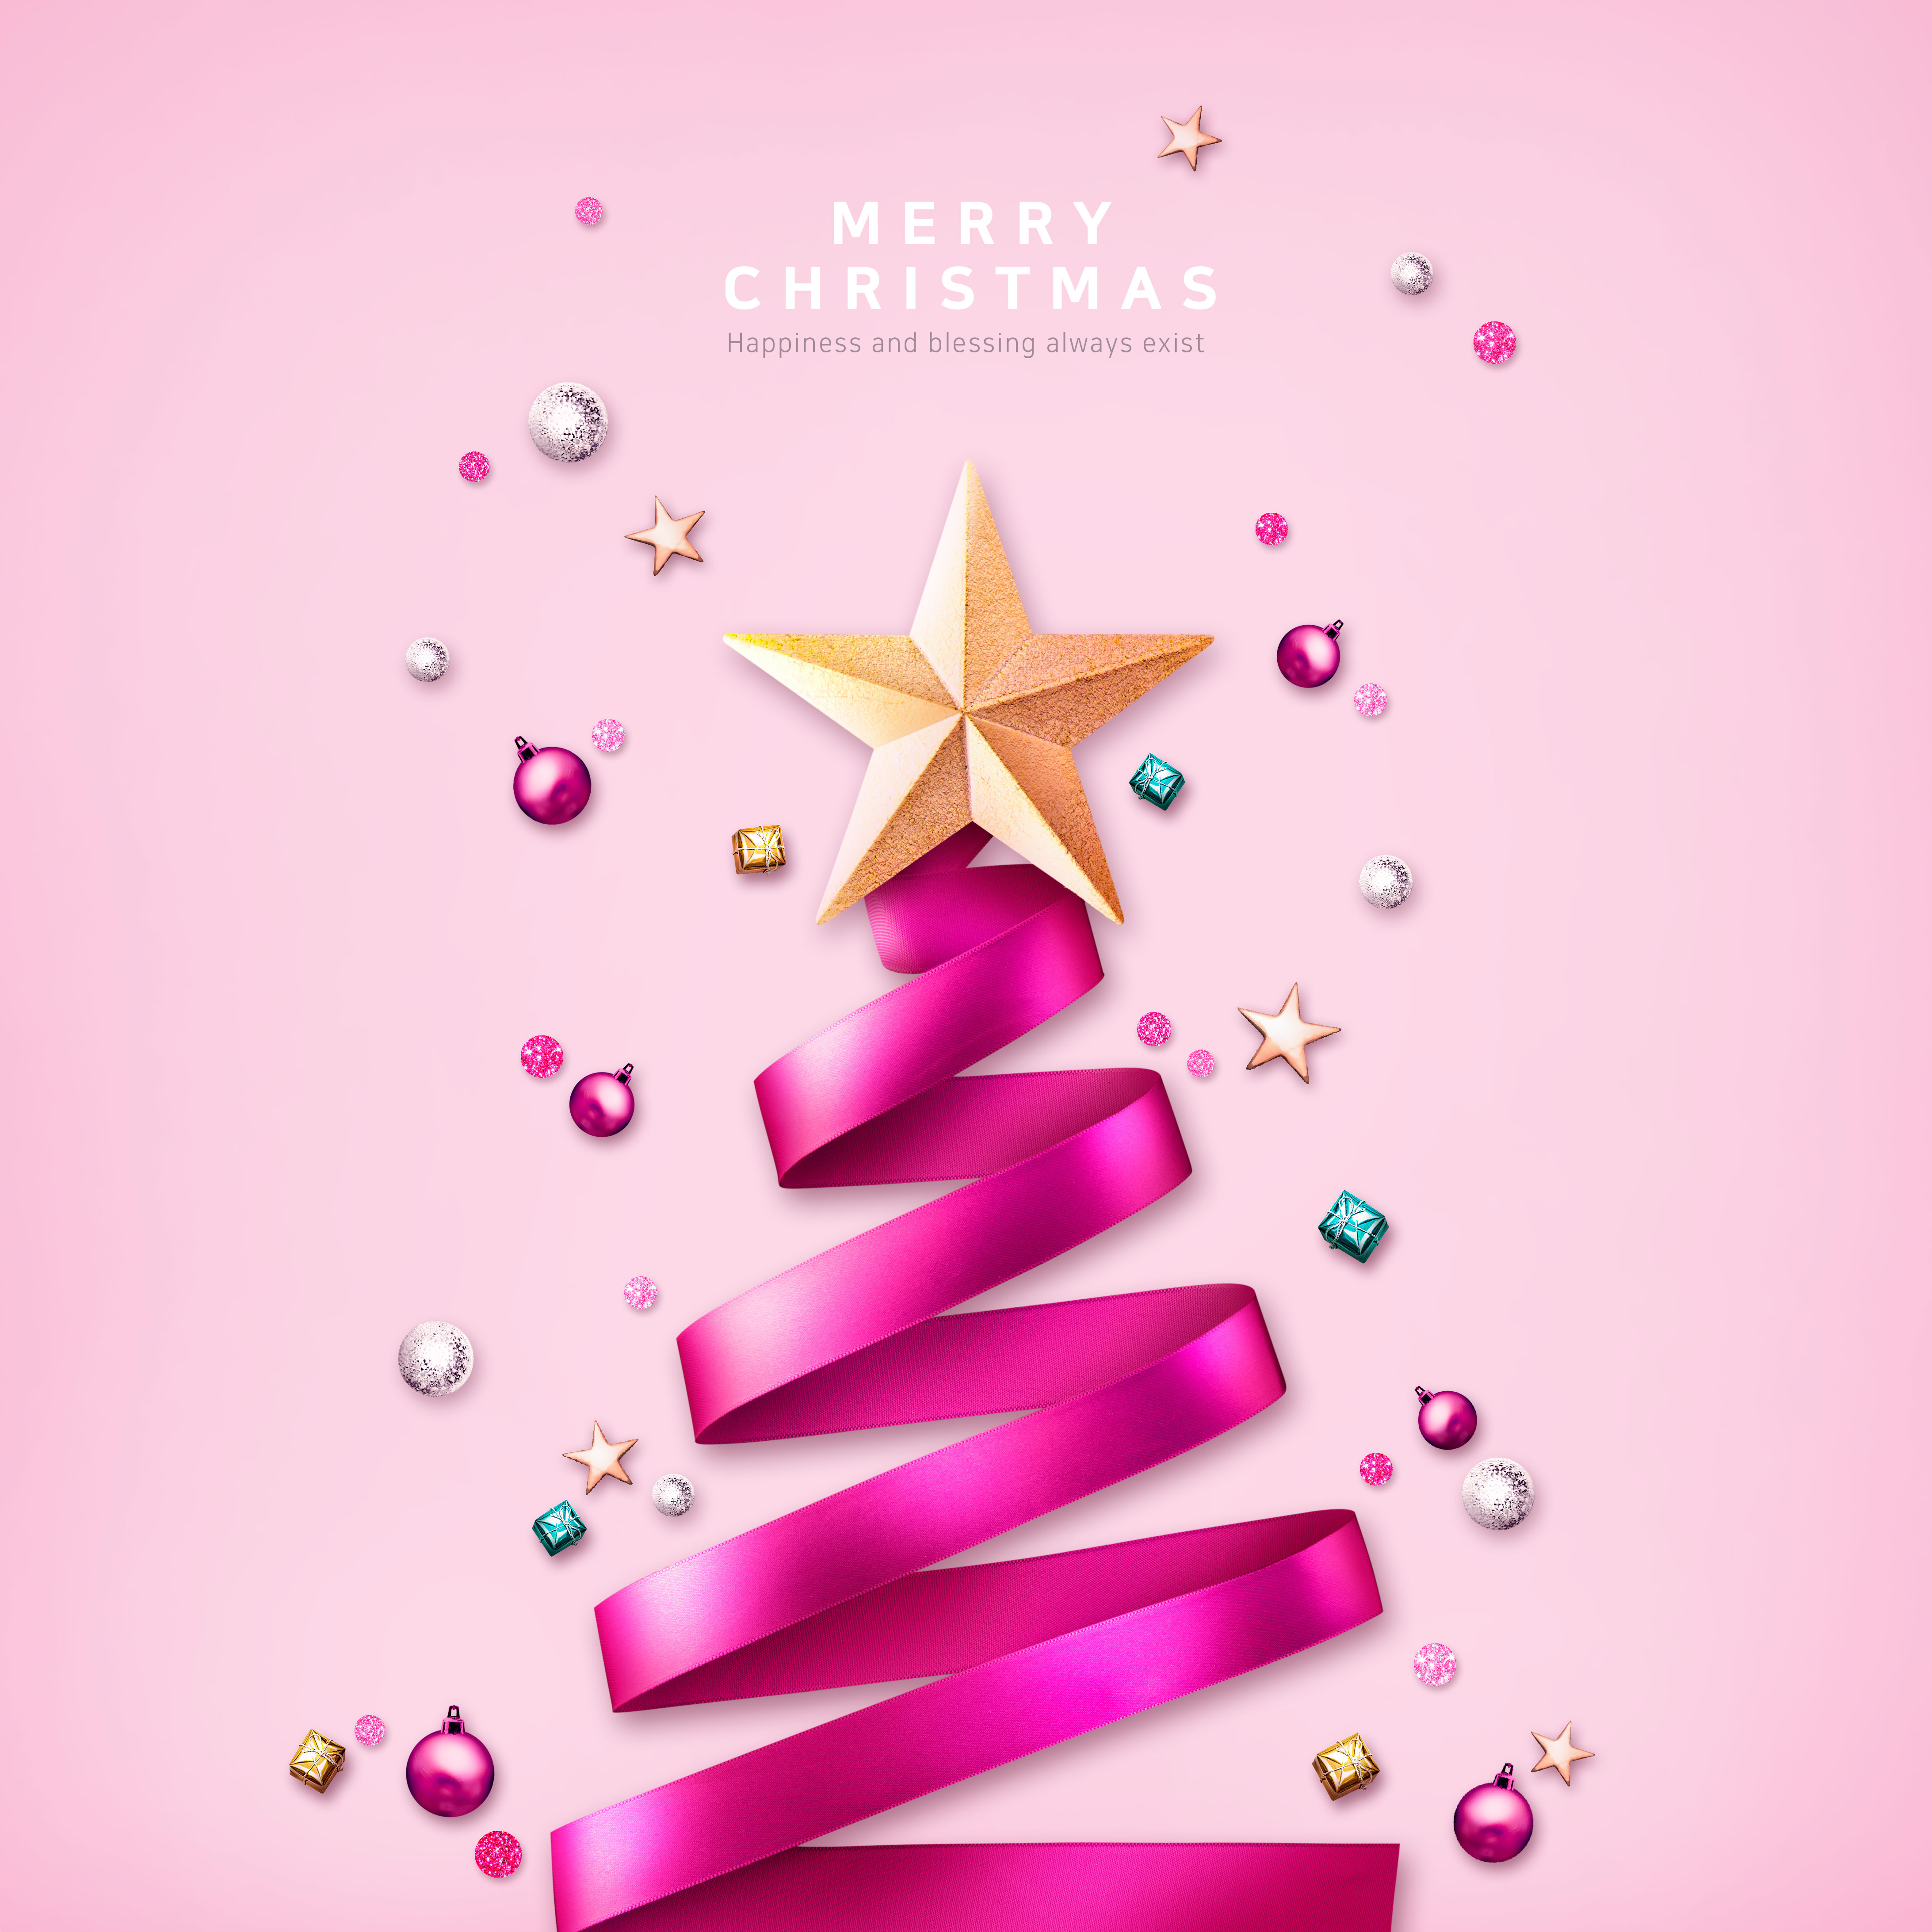 金星&玫红丝带圣诞树主题海报设计素材[PSD]插图